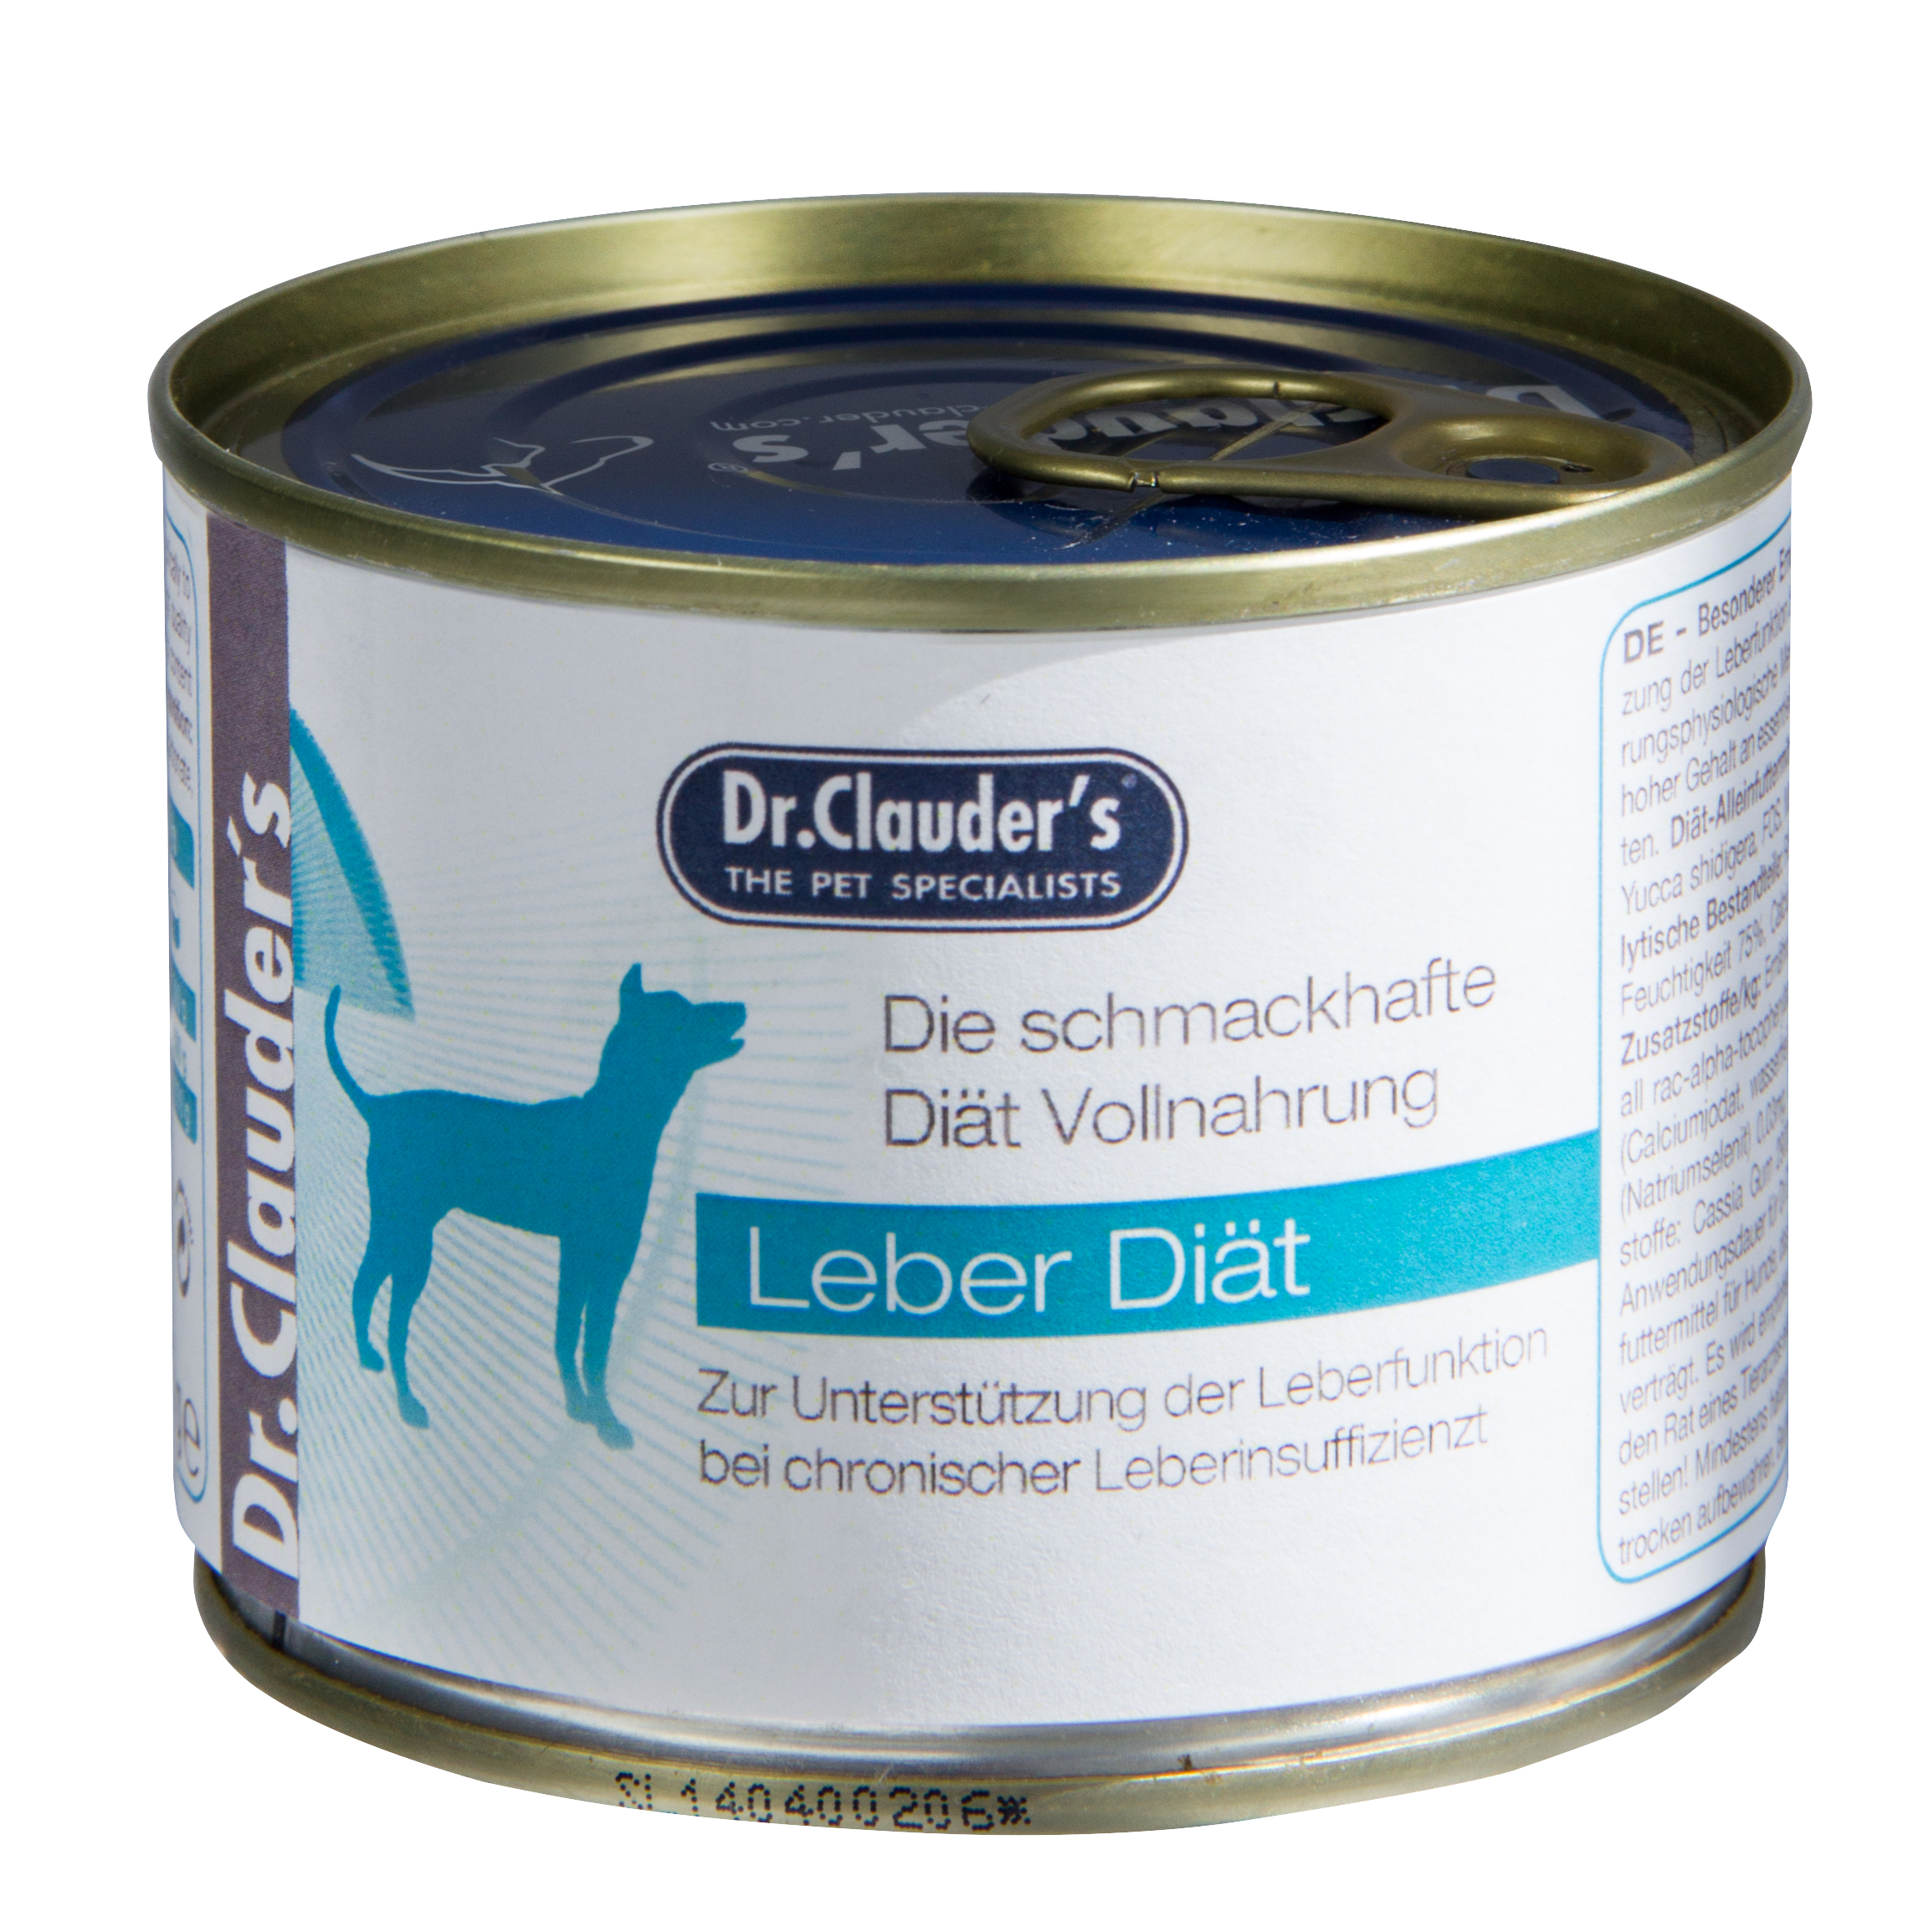 Dr.Clauder's LPD Hepatic Diet drėgnas maistas šunims, sergantiems kepenų ligomis 200g